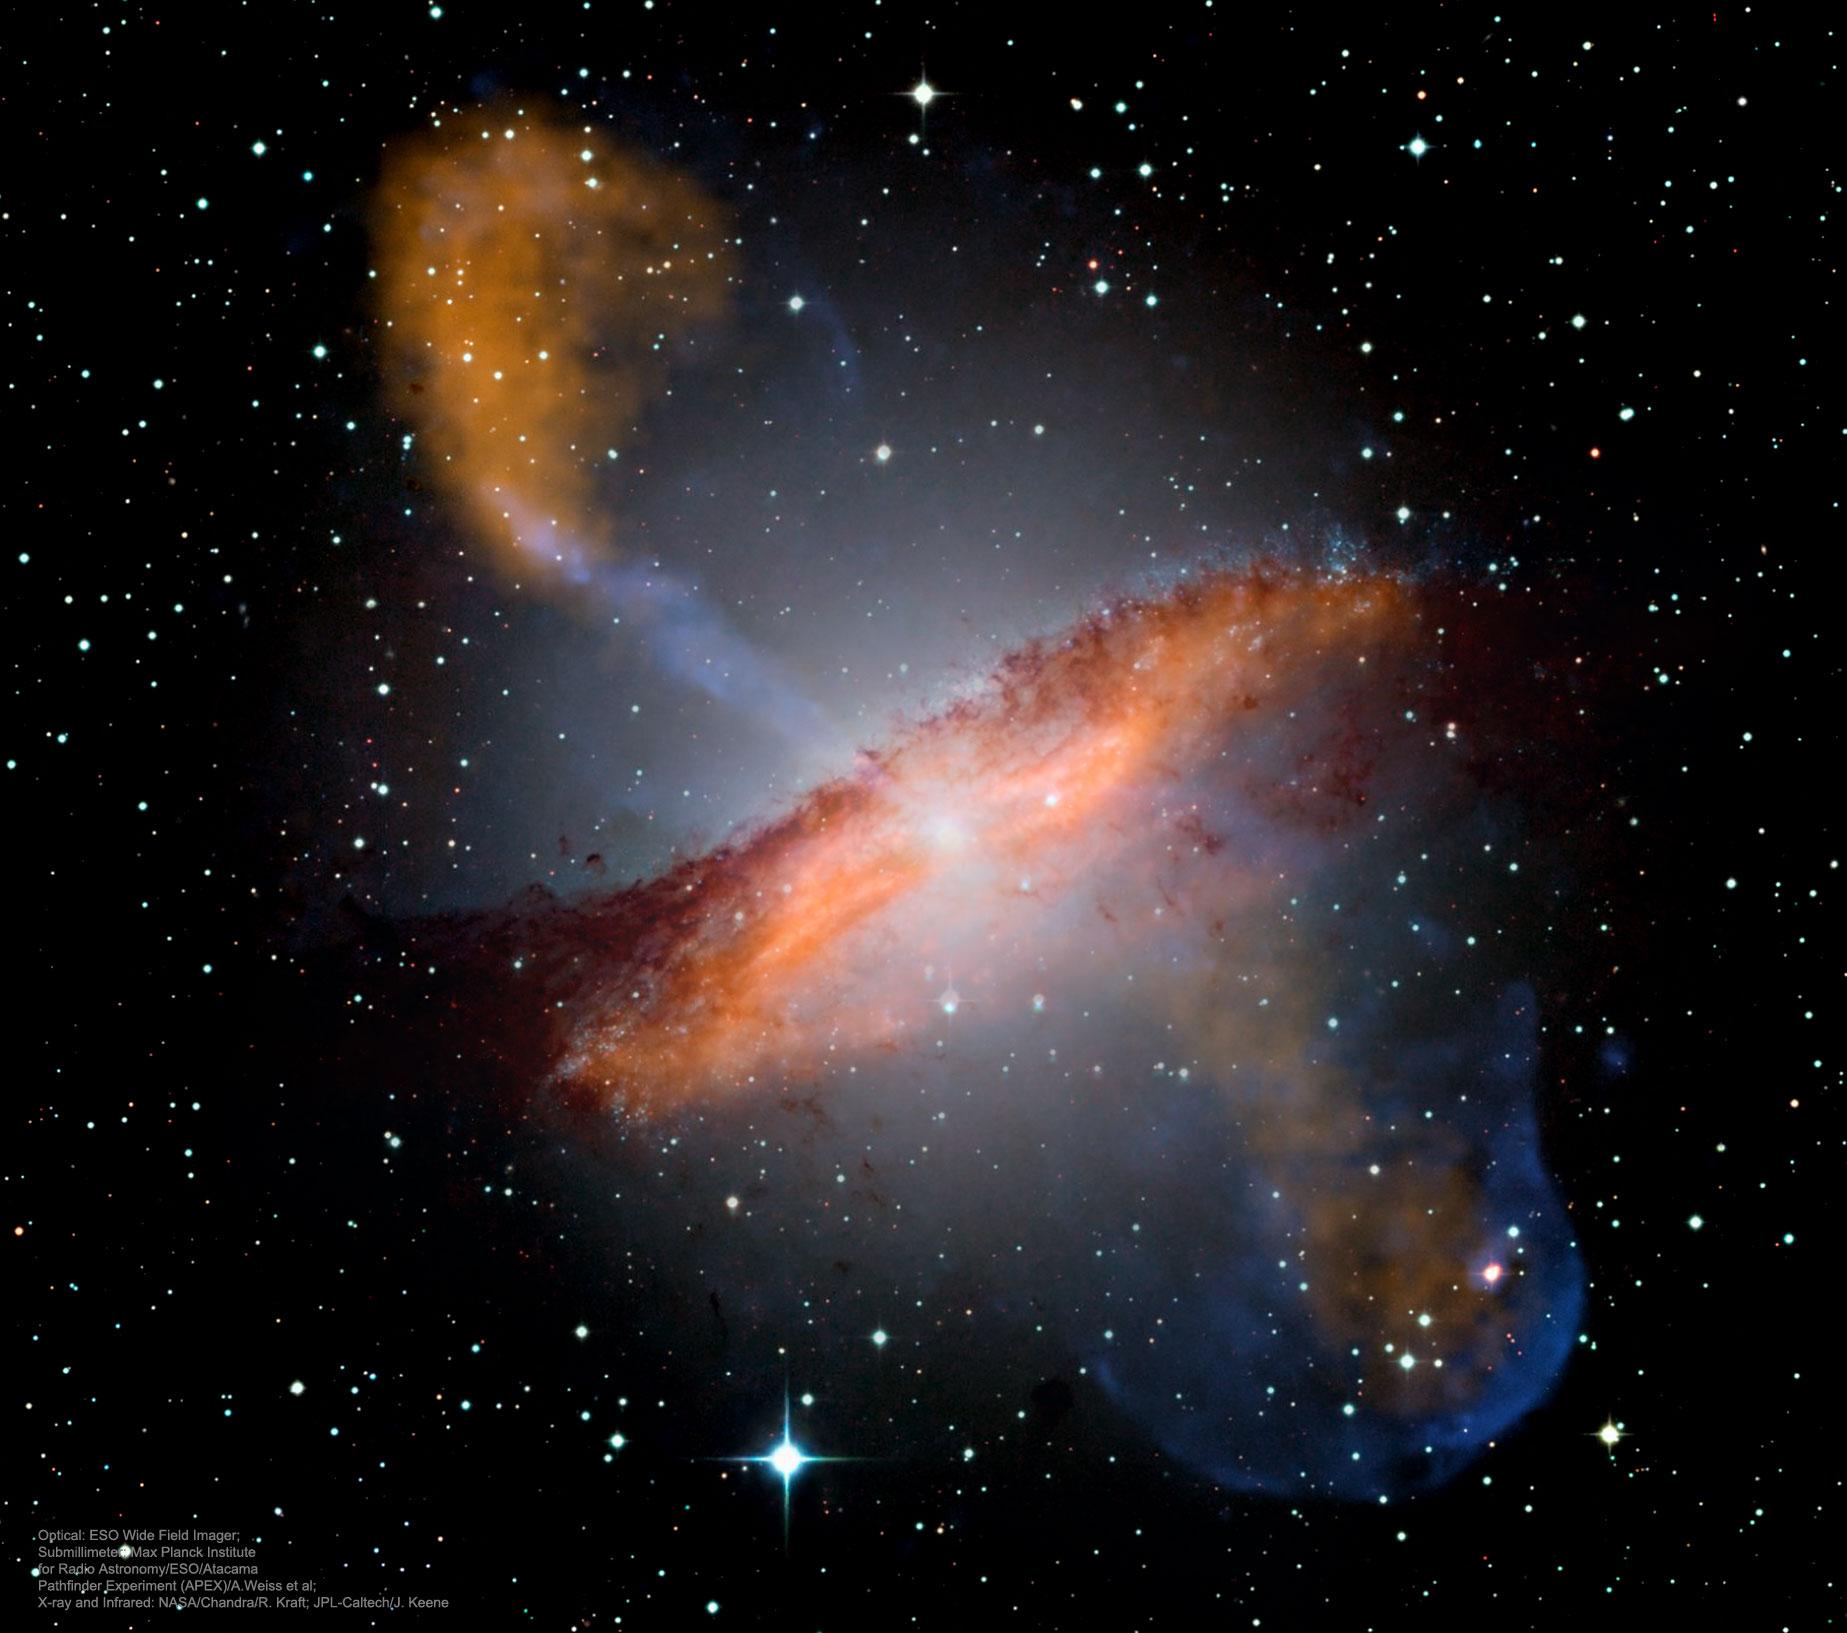 مجرّة غريبة الشكل تظهر بقرصها الكبير مائل قليلاً وقد رسمت عليه الخيوط الإنسيابية المغناطيسية بلونها الأبيض فوق عجدّة صور مستظهرة للمجرّة بألوانٍ بيضاء وبرتقالية وحمراء وزرقاء. تظهر غمامة من المواد وبشكل خاص خطّ من التدفّقات أو الغاز والغبار بشكل معامد يمرّ من قرص المجرّة الناتجة أساساً عن اندماج مجرّتين.